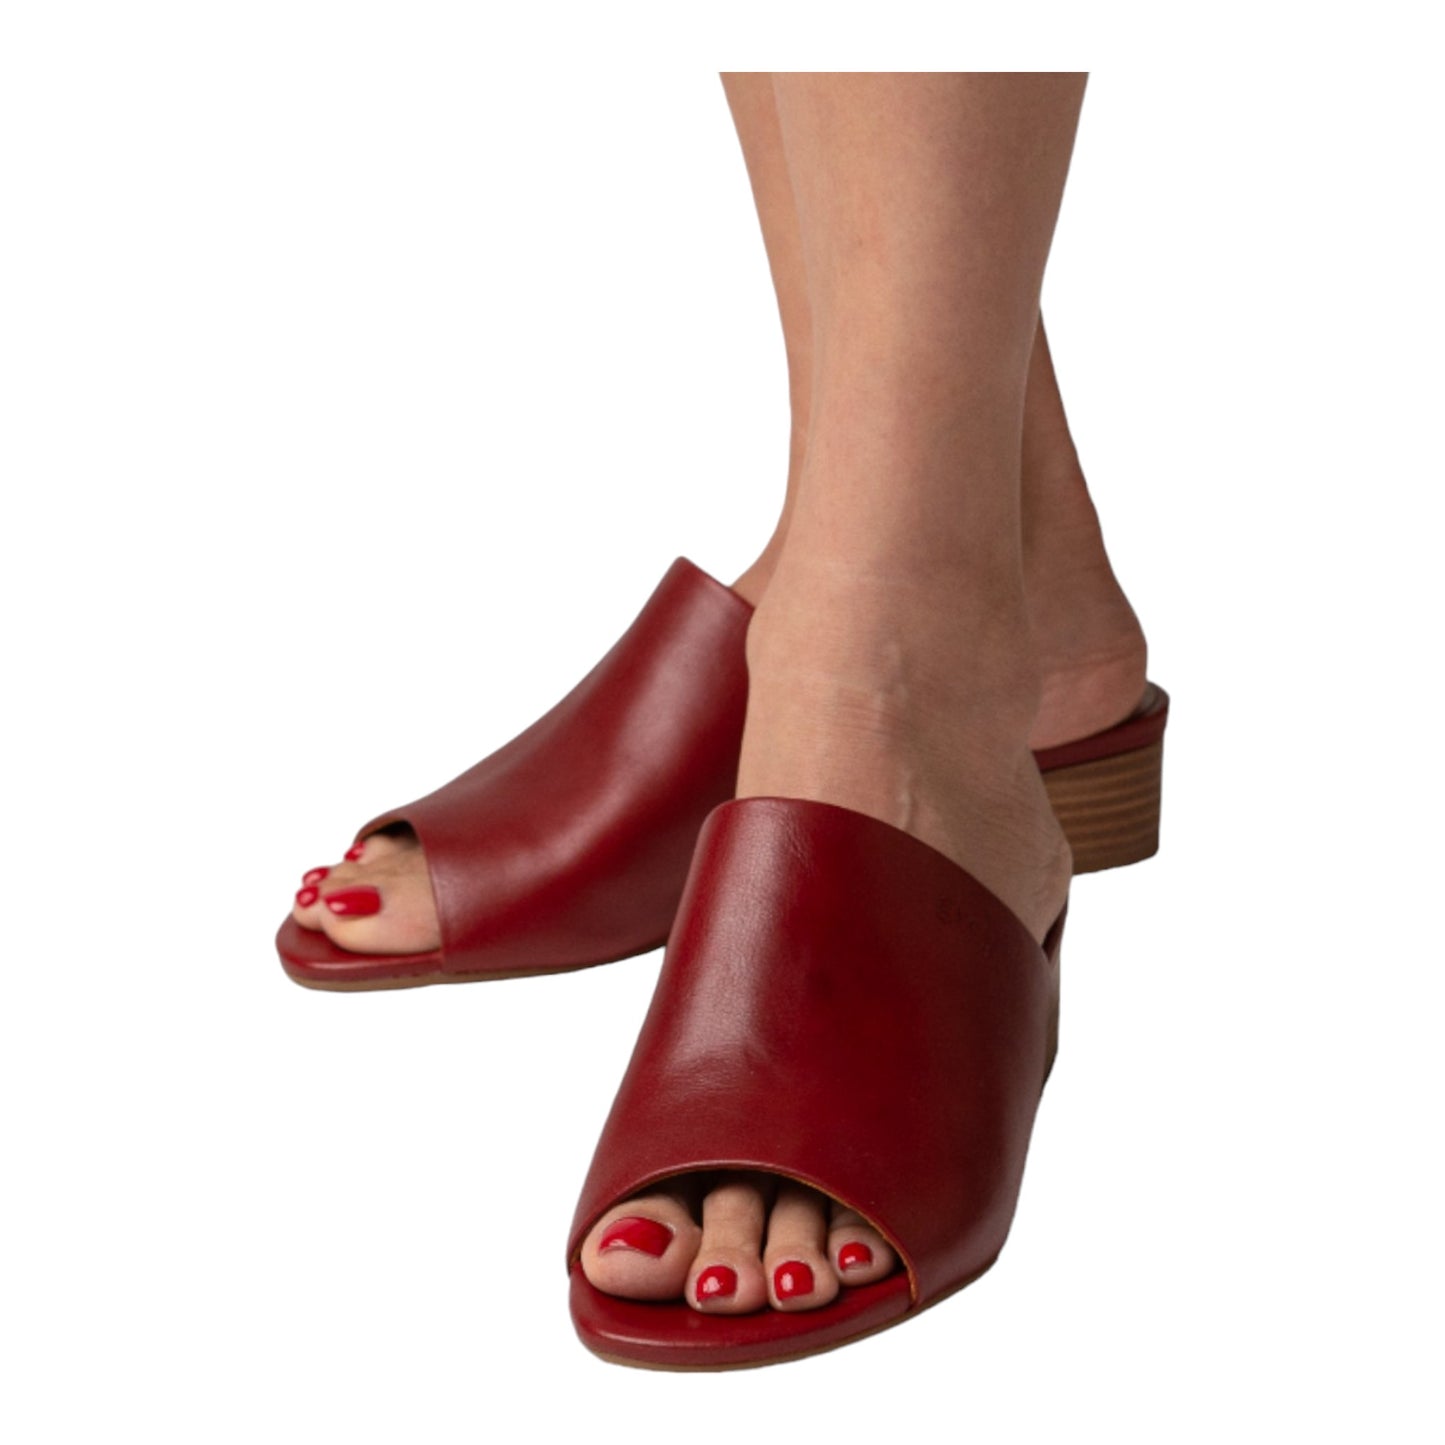 Low Heeled Mule Sandals (Heidi - Red)